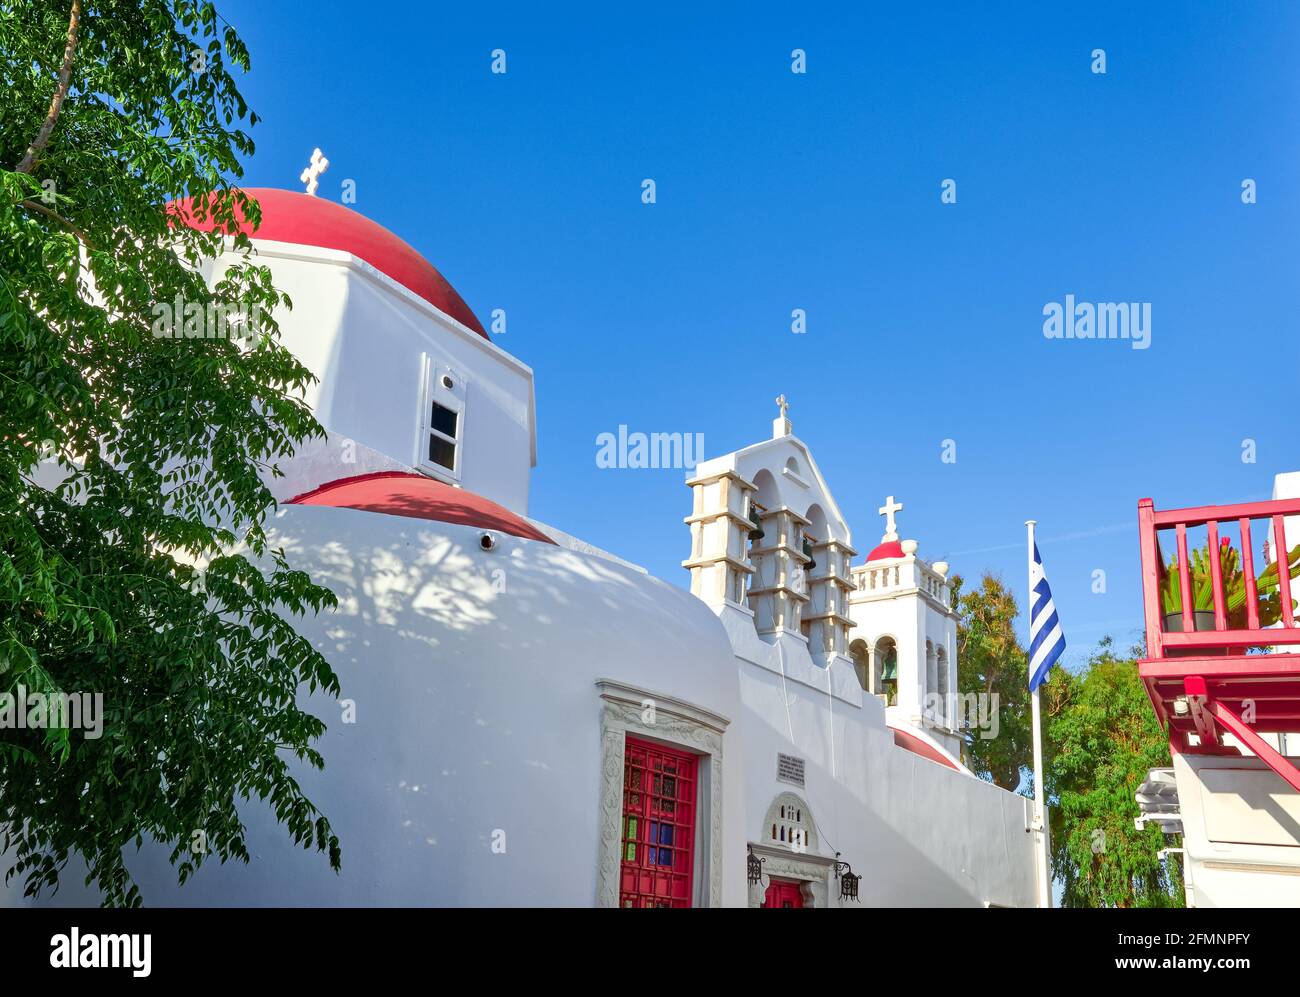 Église orthodoxe grecque traditionnelle dans la ville grecque de l'île. Dôme rouge, murs blanchis à la chaux, drapeau grec et clocher. Mykonos, Cyclades, Grèce. Banque D'Images